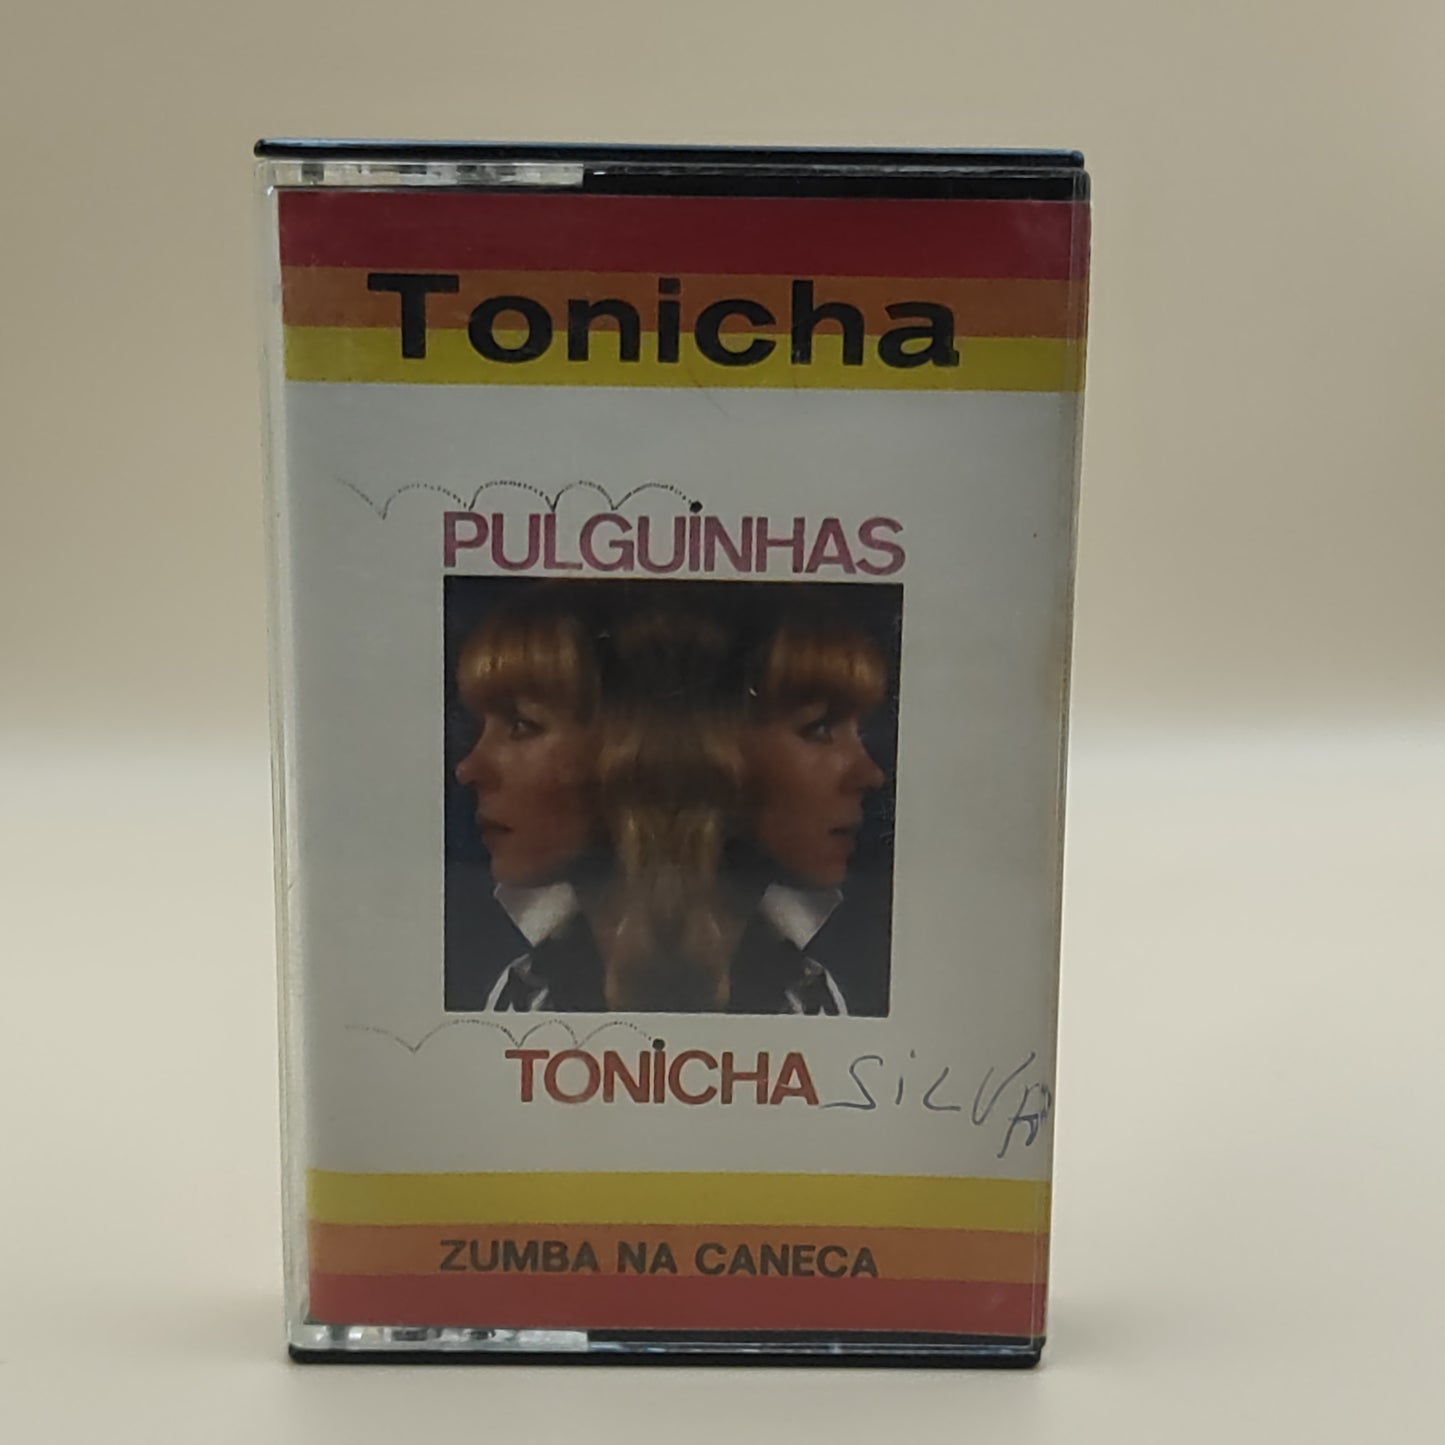 Tonicha – Pulguinhas / Marcha Dos Marinheiros